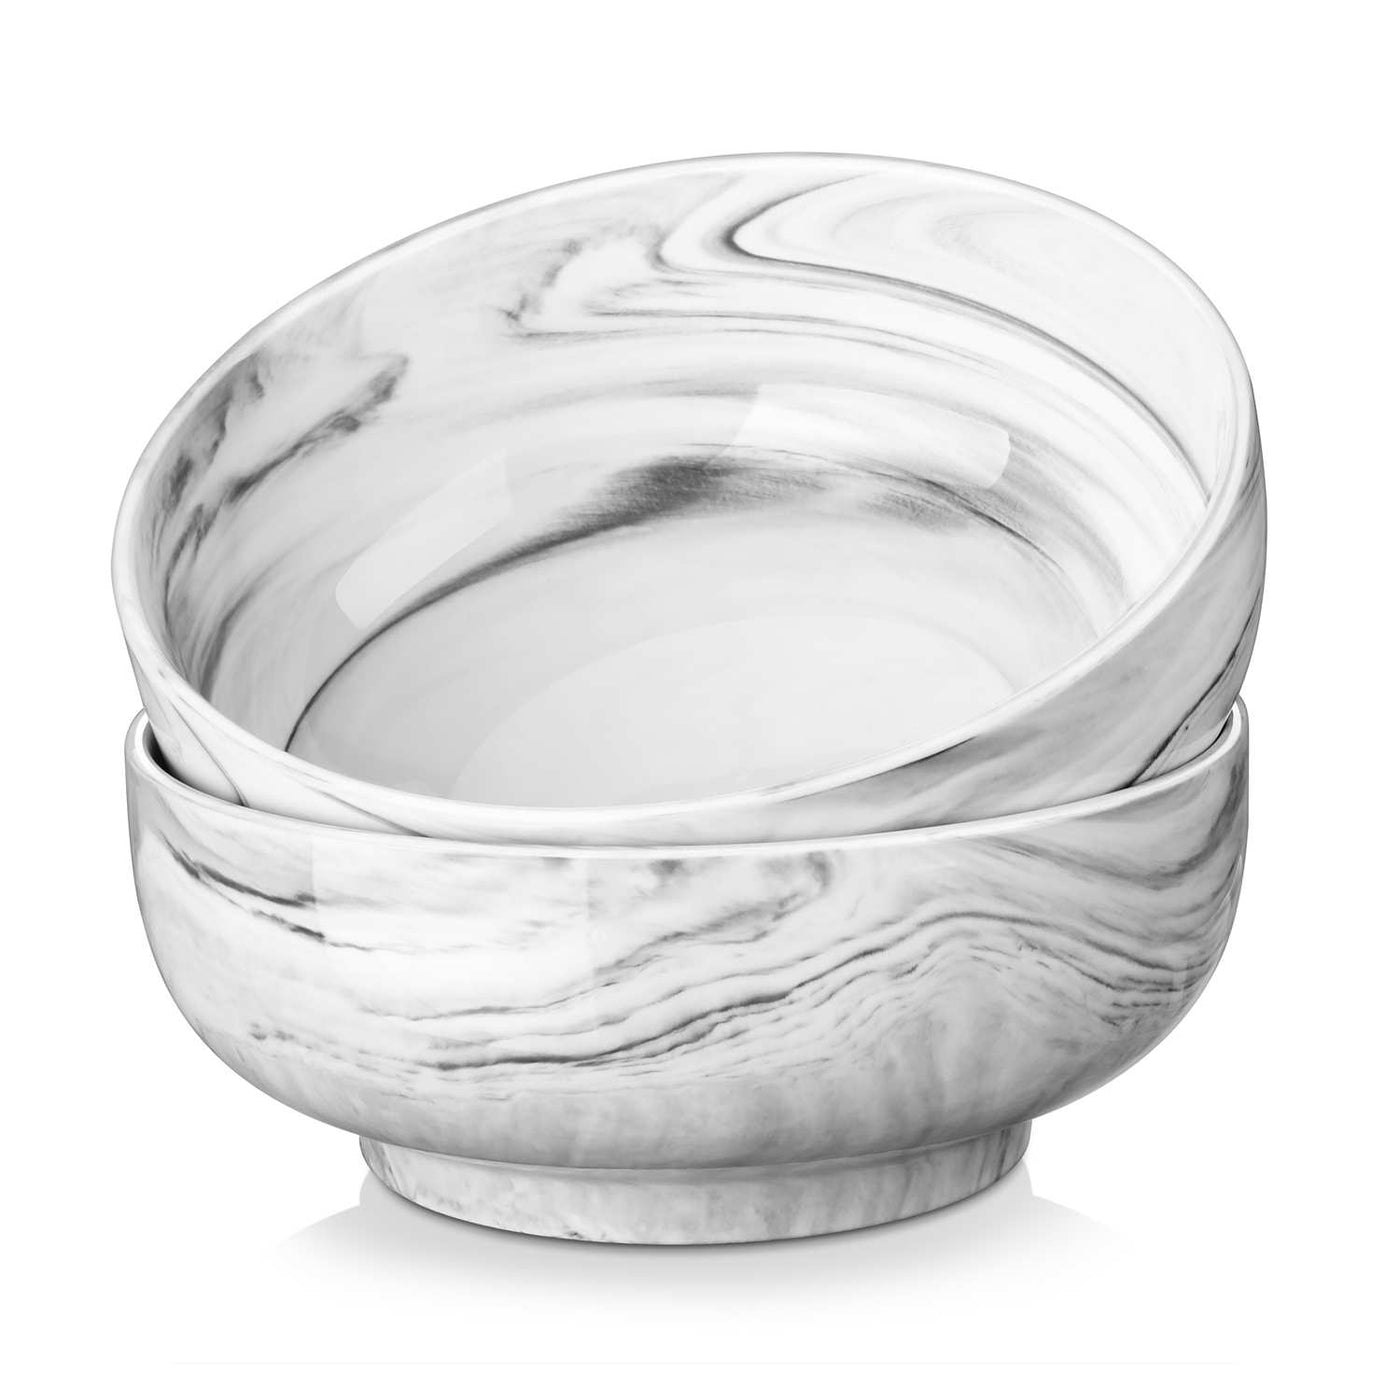 Marble Grey Small Sharing Bowls Set of 2